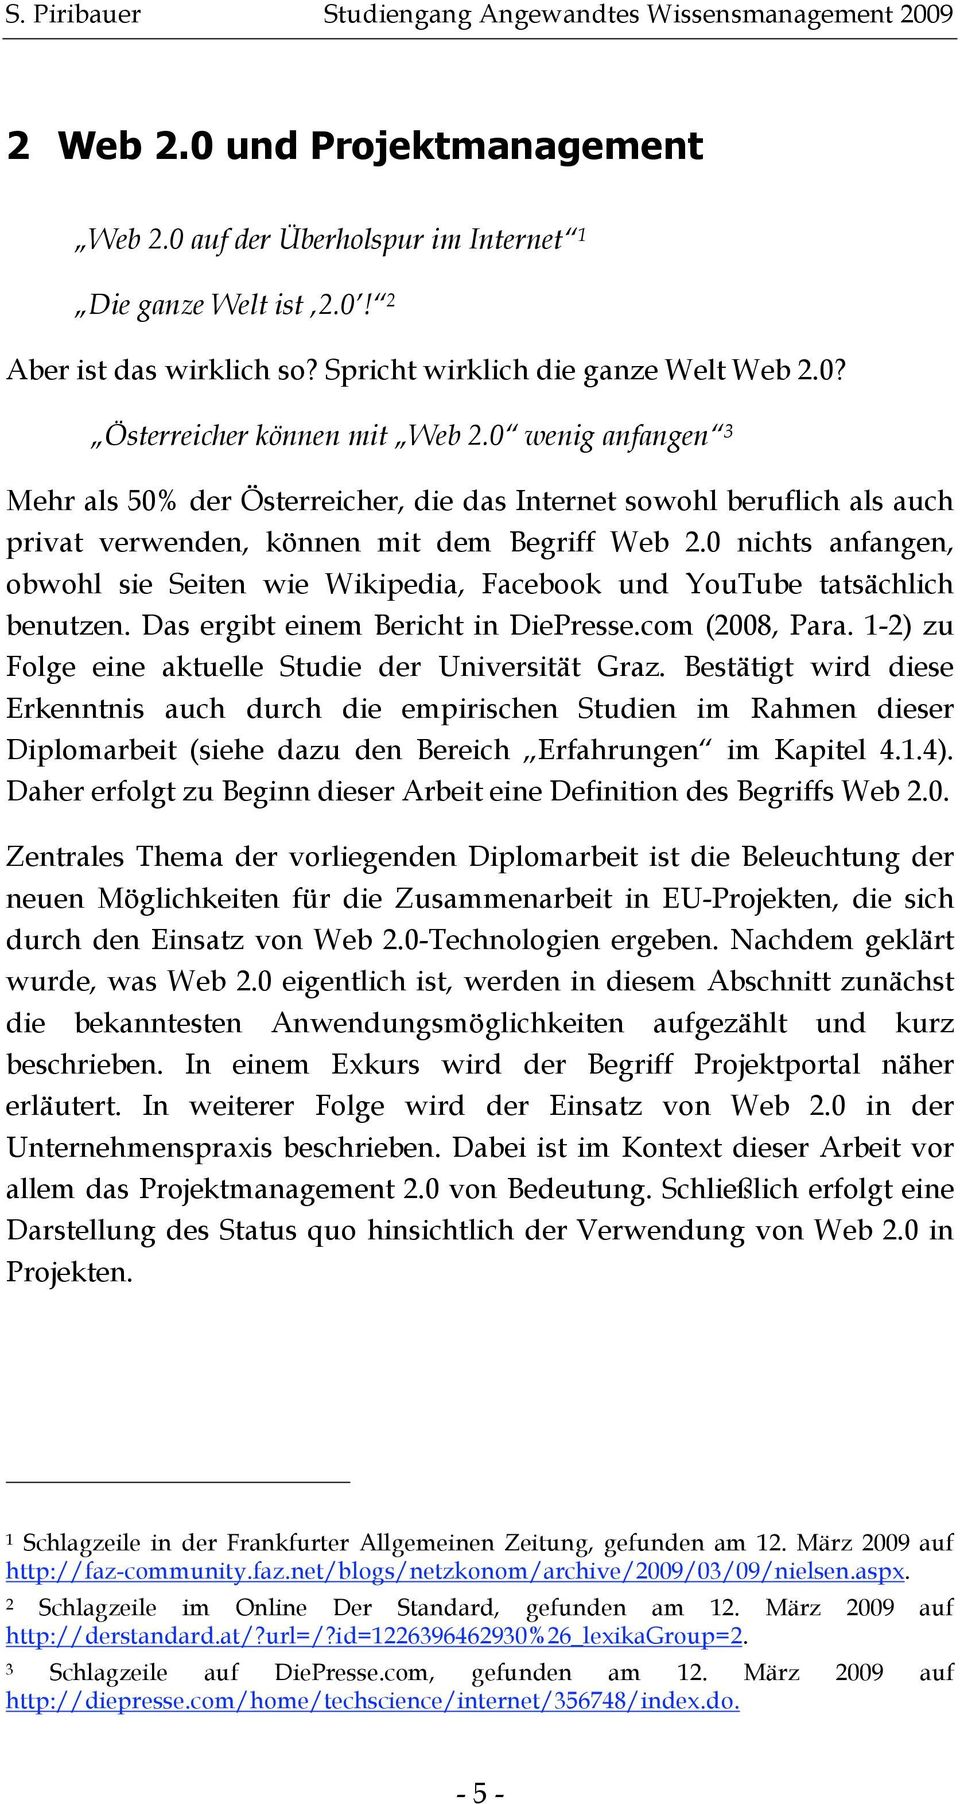 0 nichts anfangen, obwohl sie Seiten wie Wikipedia, Facebook und YouTube tatsächlich benutzen. Das ergibt einem Bericht in DiePresse.com (2008, Para.